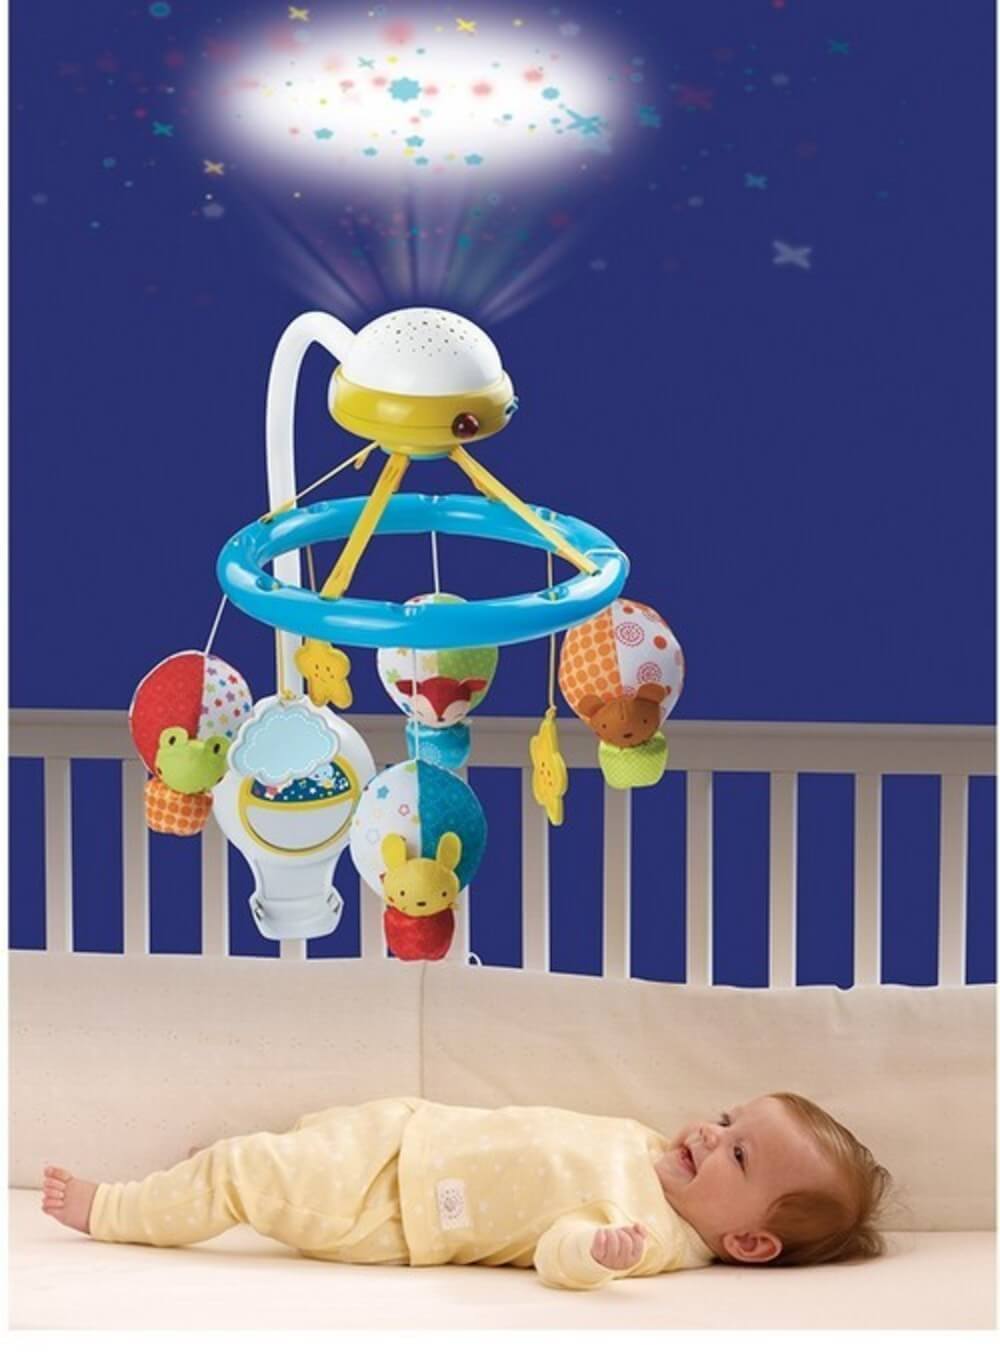 Llegó la hora de diversión con los móviles proyectores para bebé - Mega Baby - Consejos para el cuidado del bebé maternidad